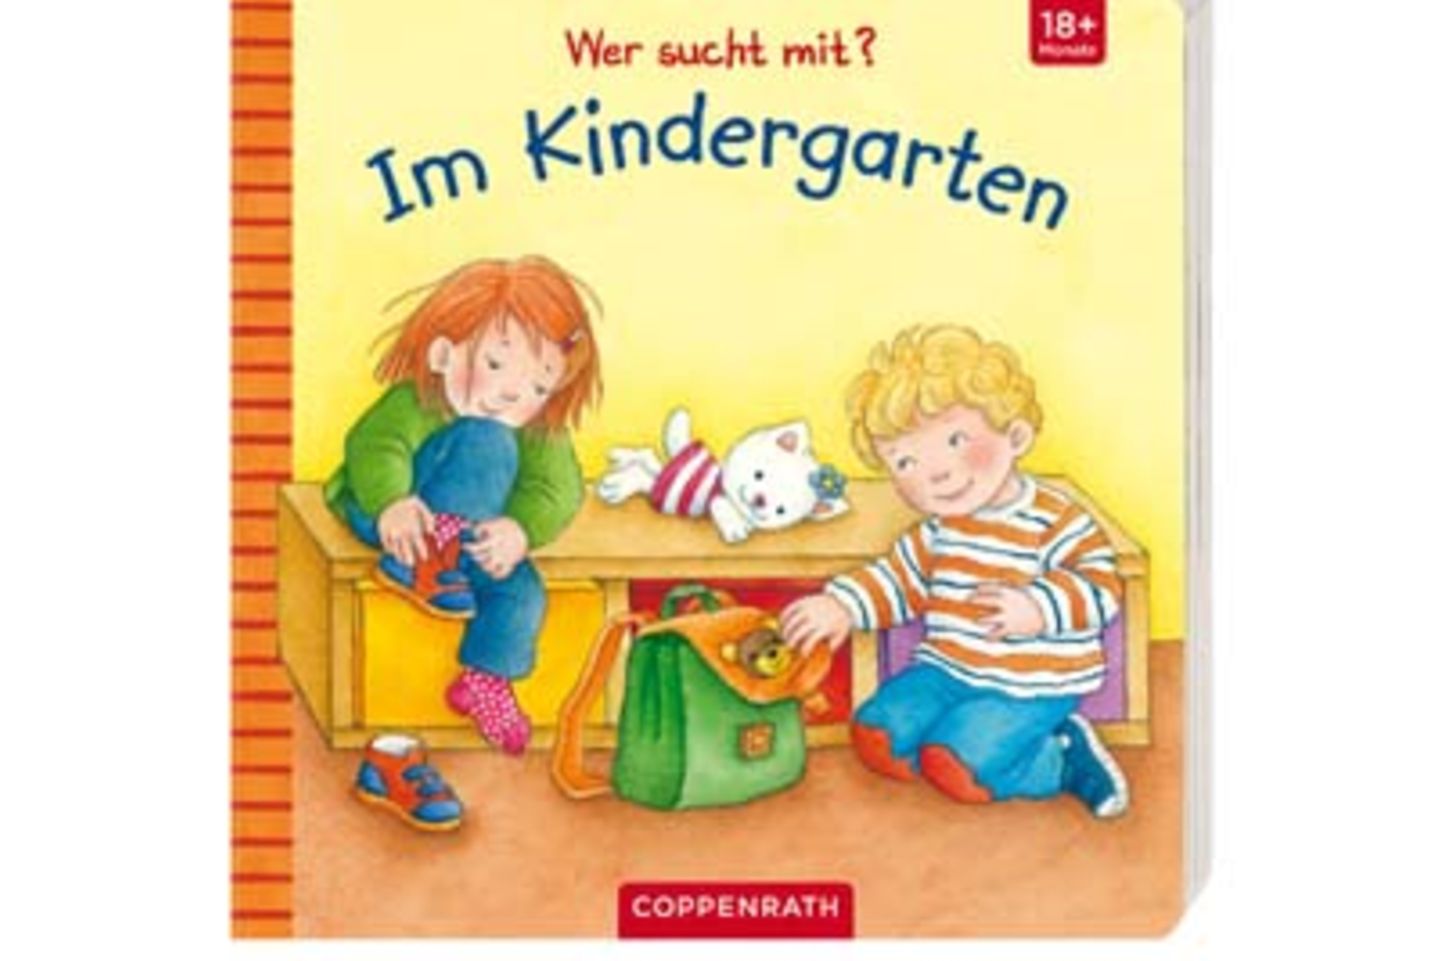 Kindergarten-Accessoires: Buch von "Coppenrath" über Tausendkind.de